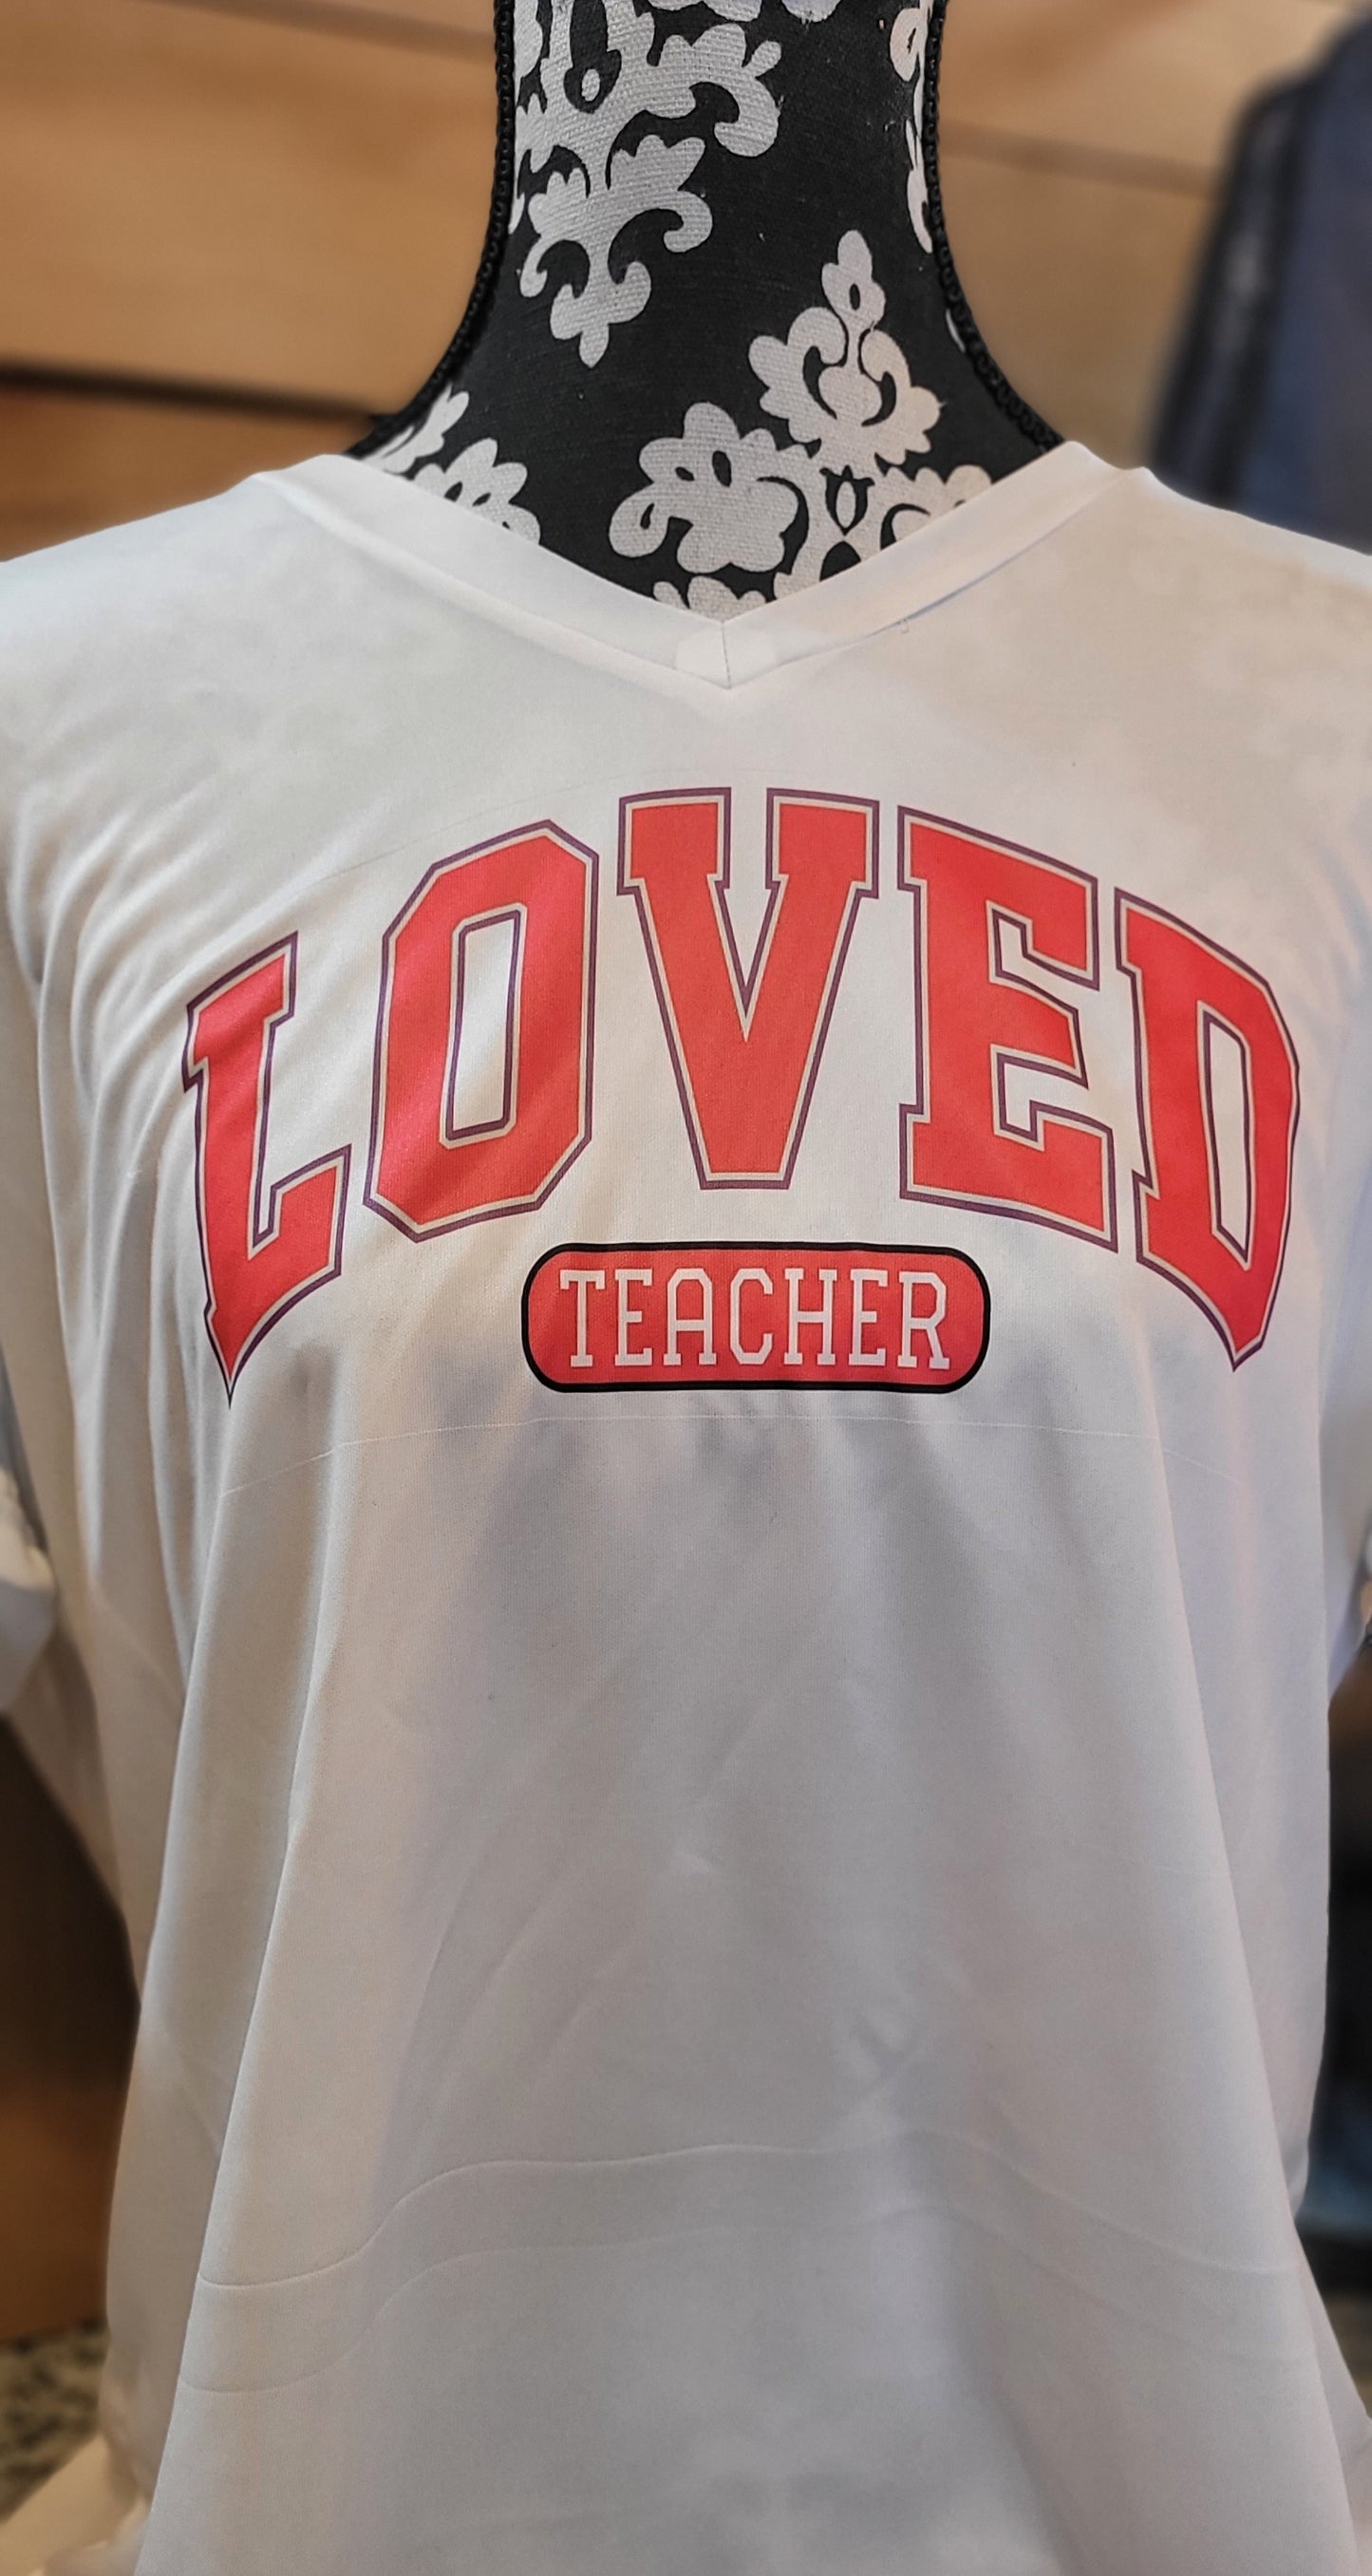 Loved Teacher Tshirt